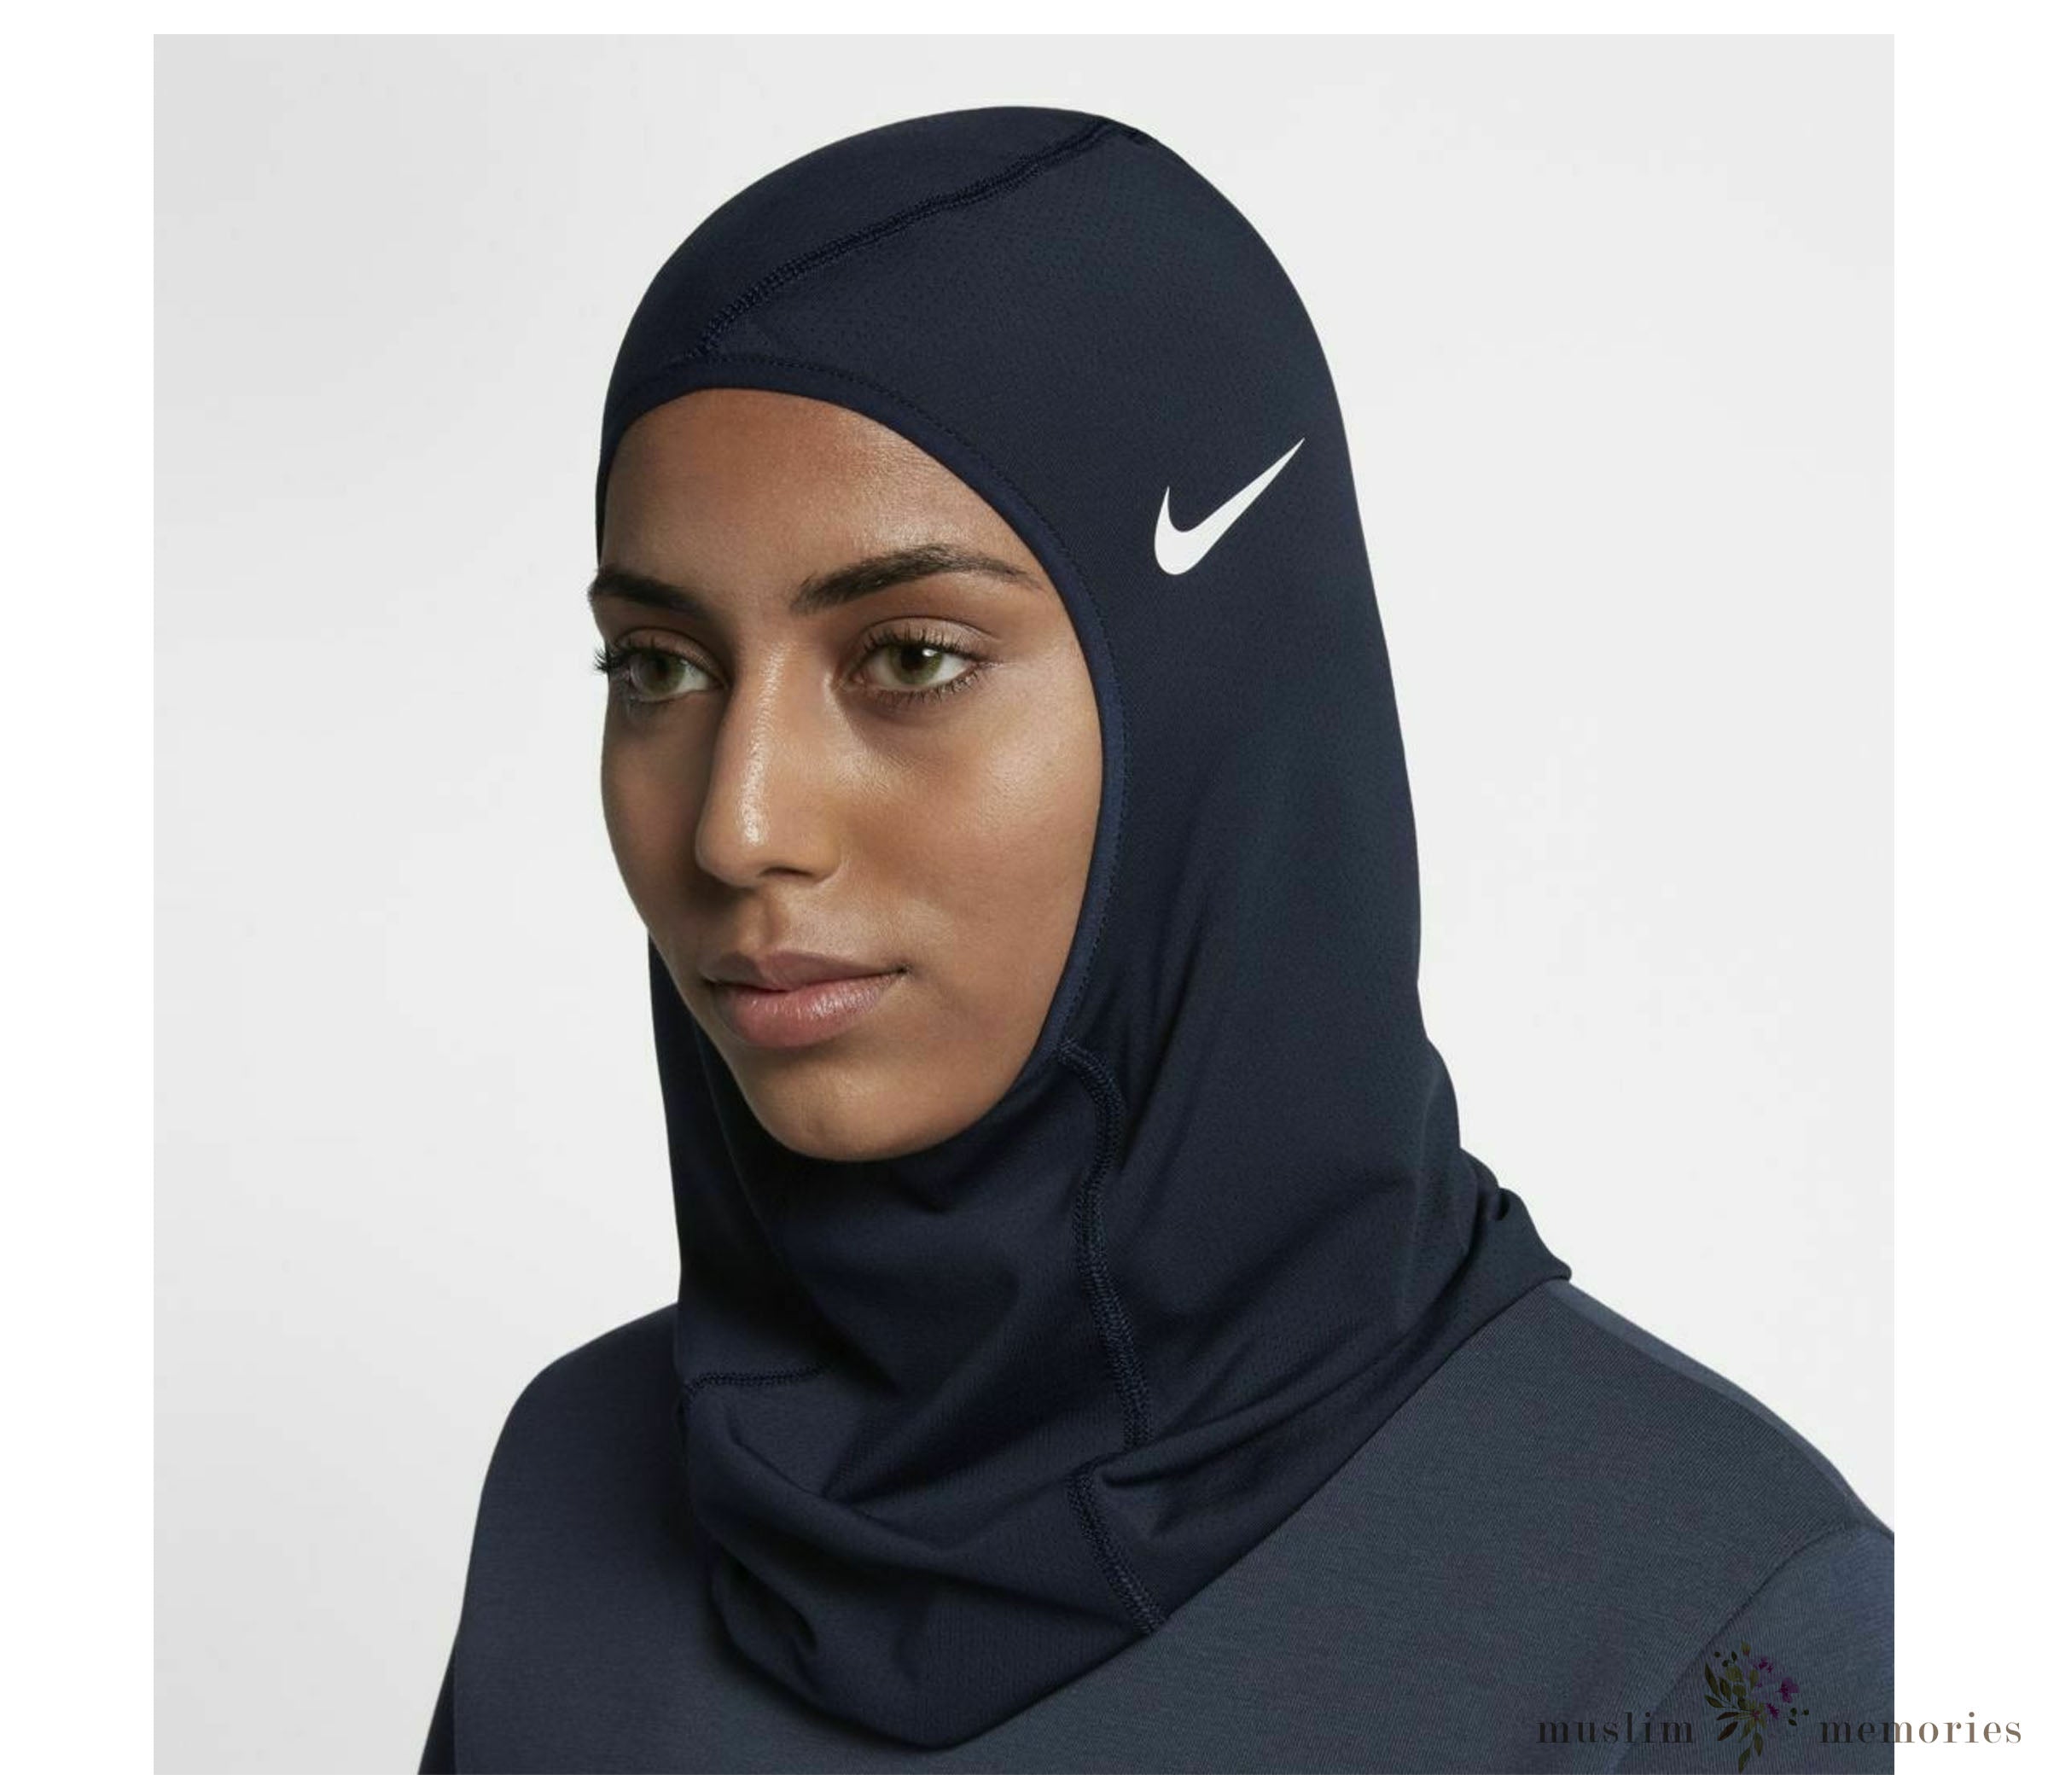 Contratado triatlón Simetría Nike Dry Fit Sport Headwear For Women | Muslim Memories